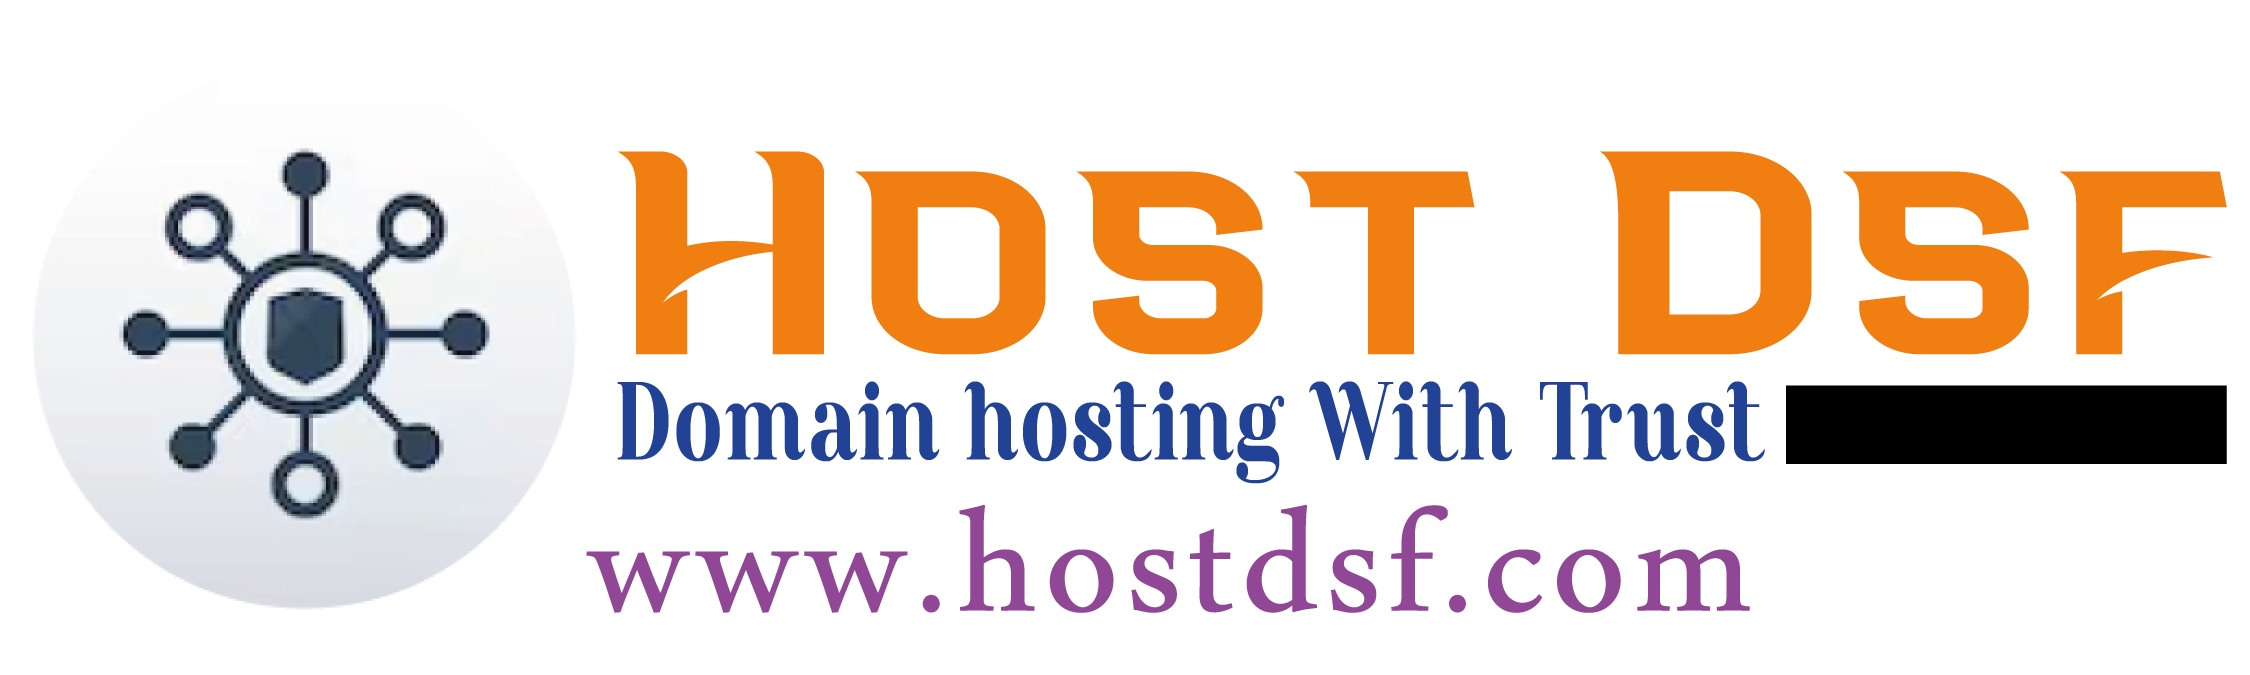 host-dsf-logo